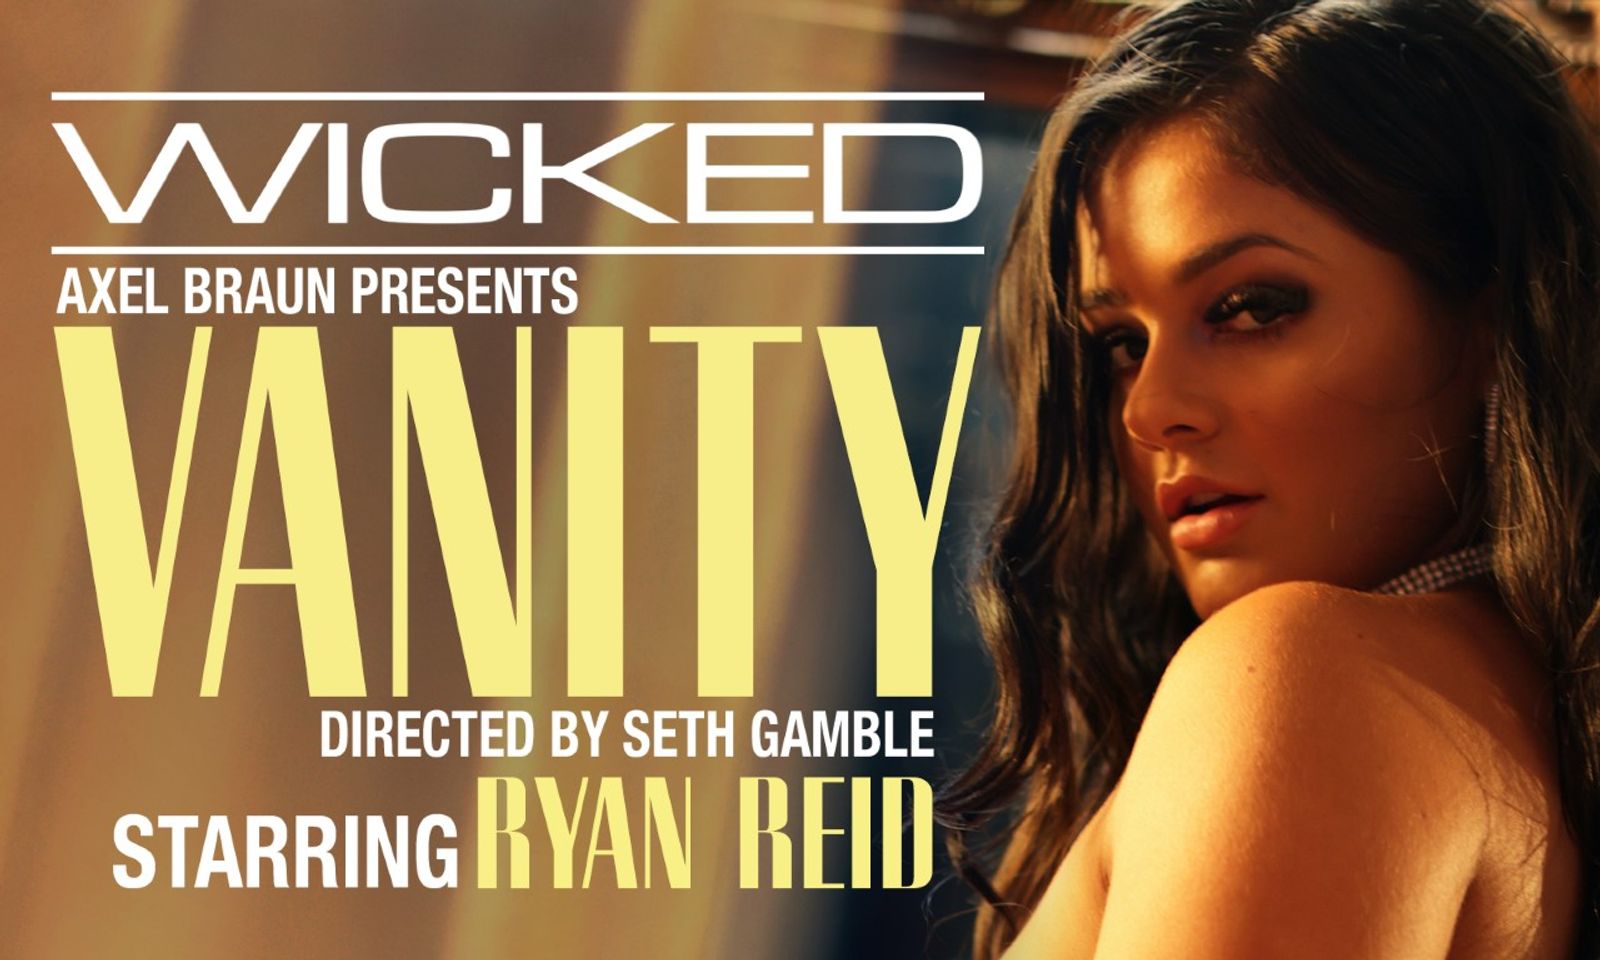 Ryan Reid Brings 'Sheer Pleasure' to Finale of Gamble's 'Vanity'